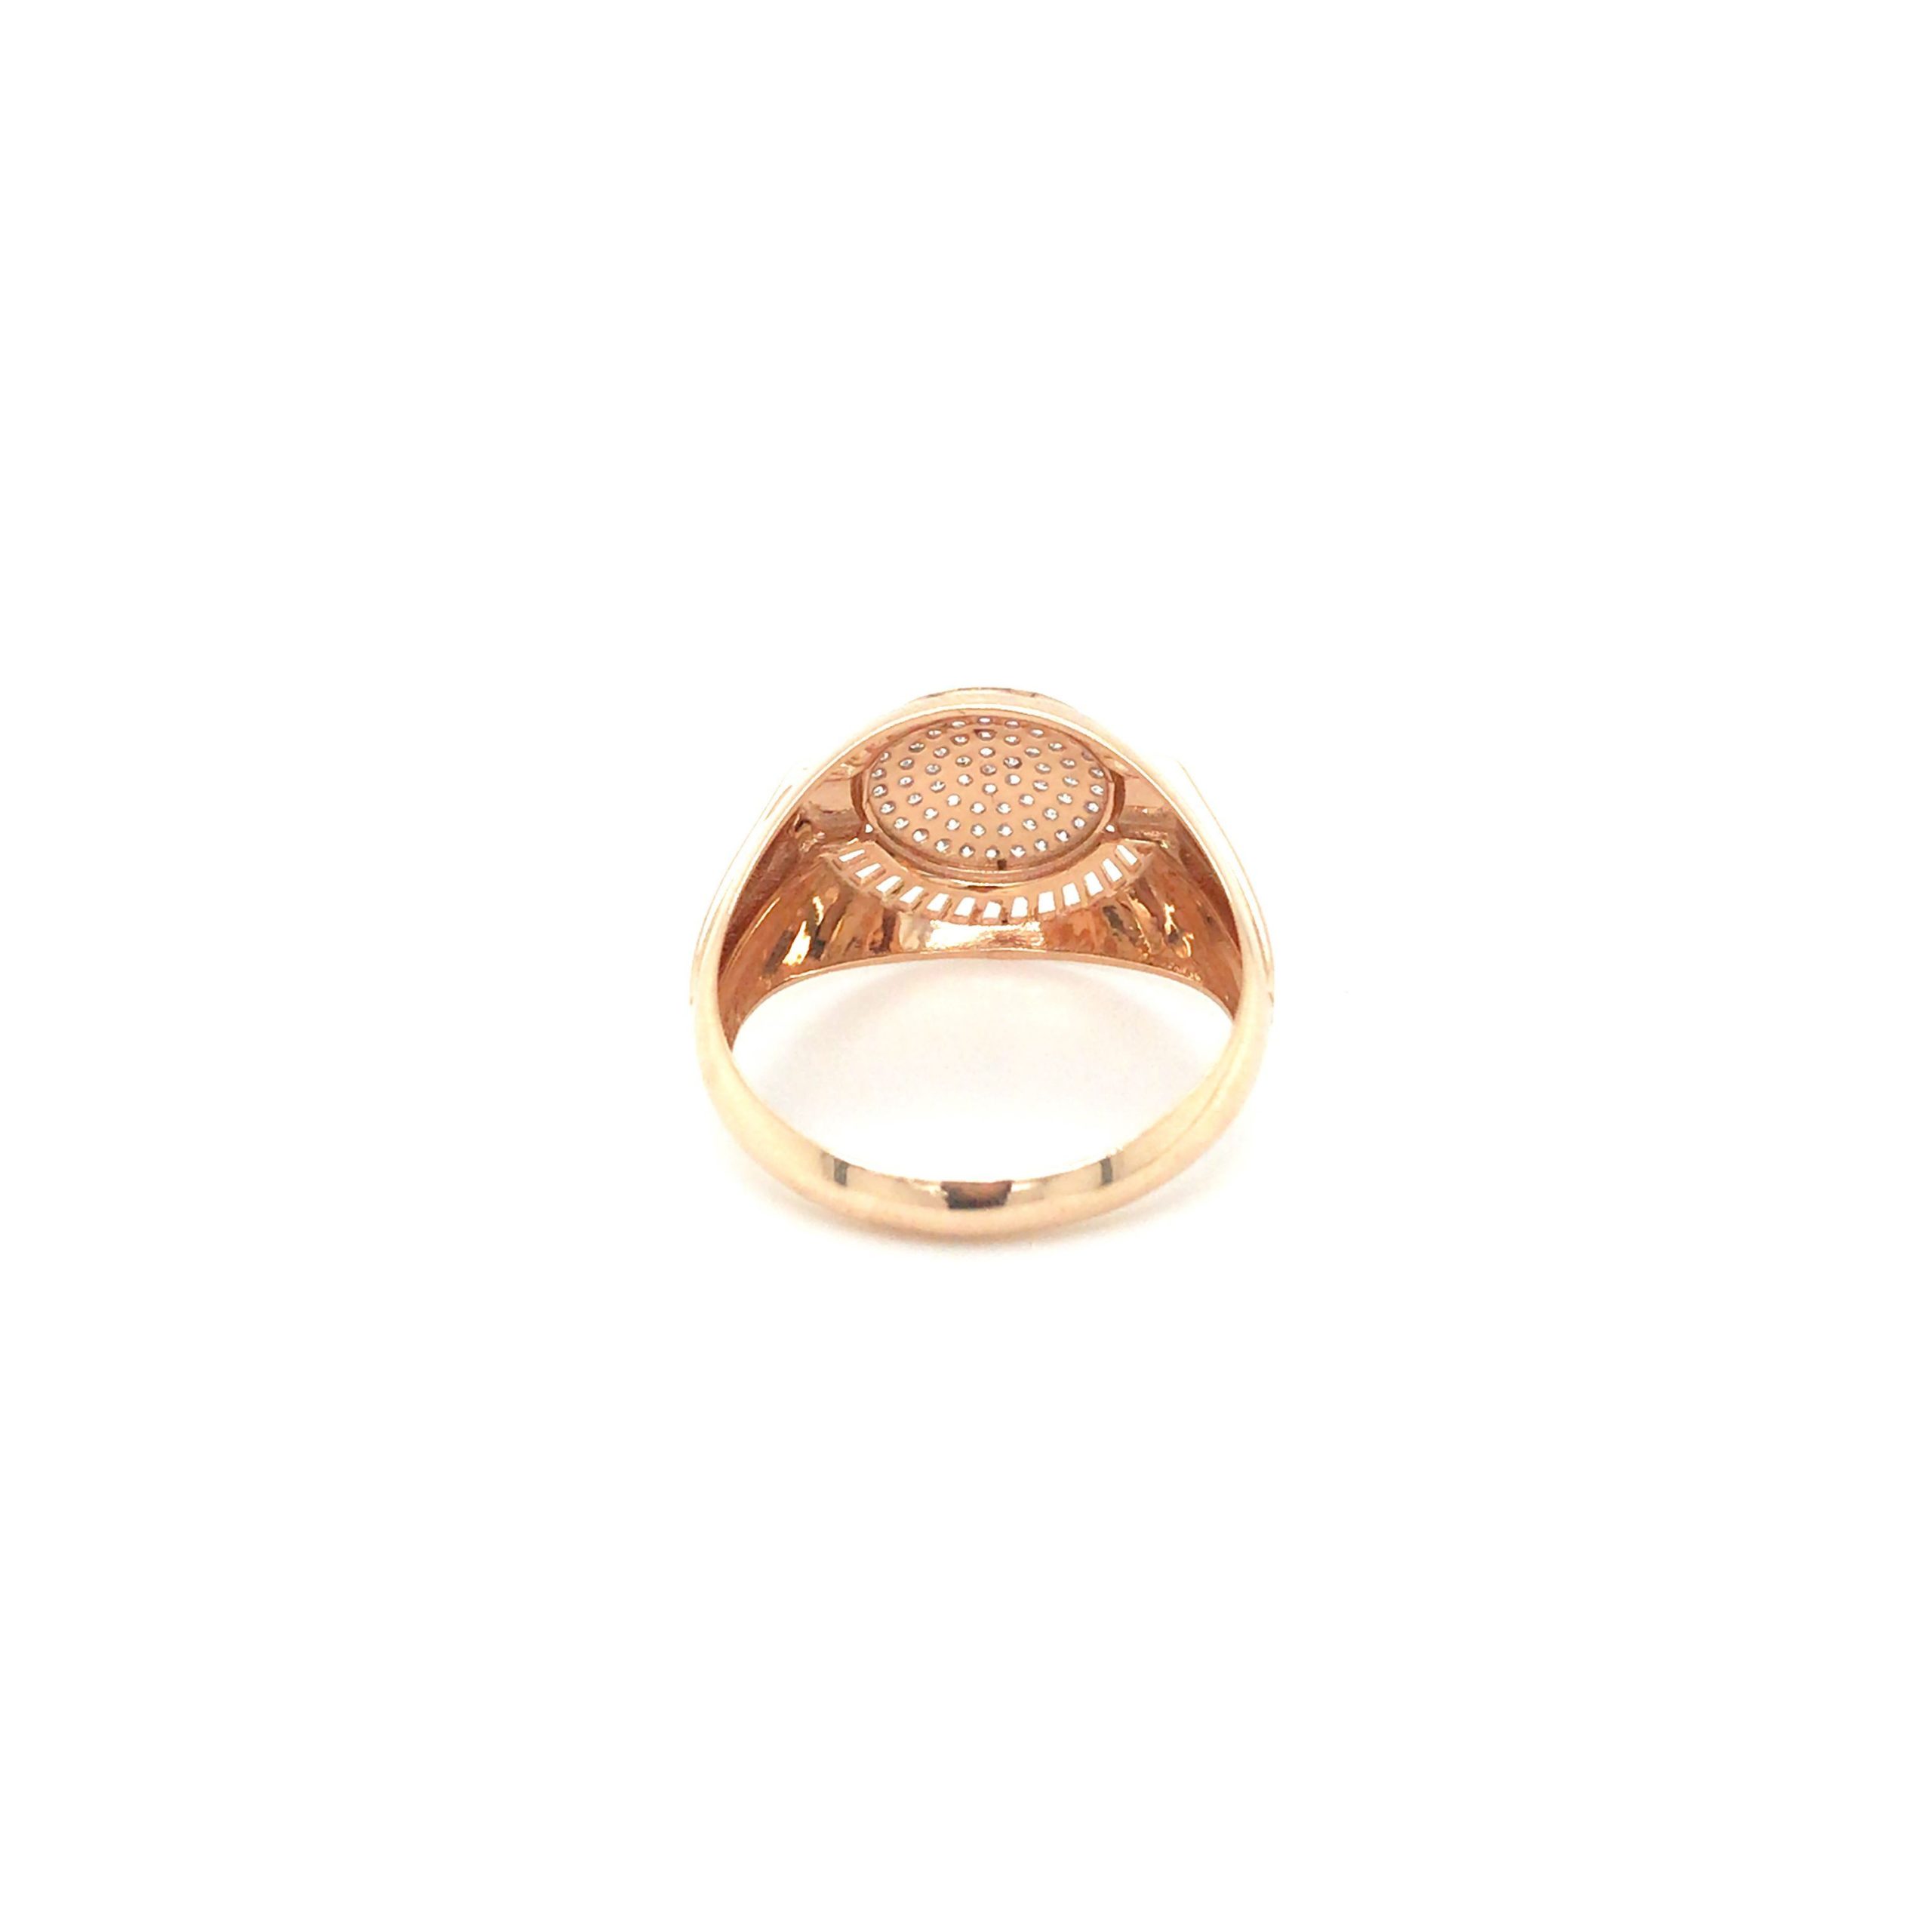 Matching Wedding Band: Infinity Diamond Wedding Ring Set in 18k Gold